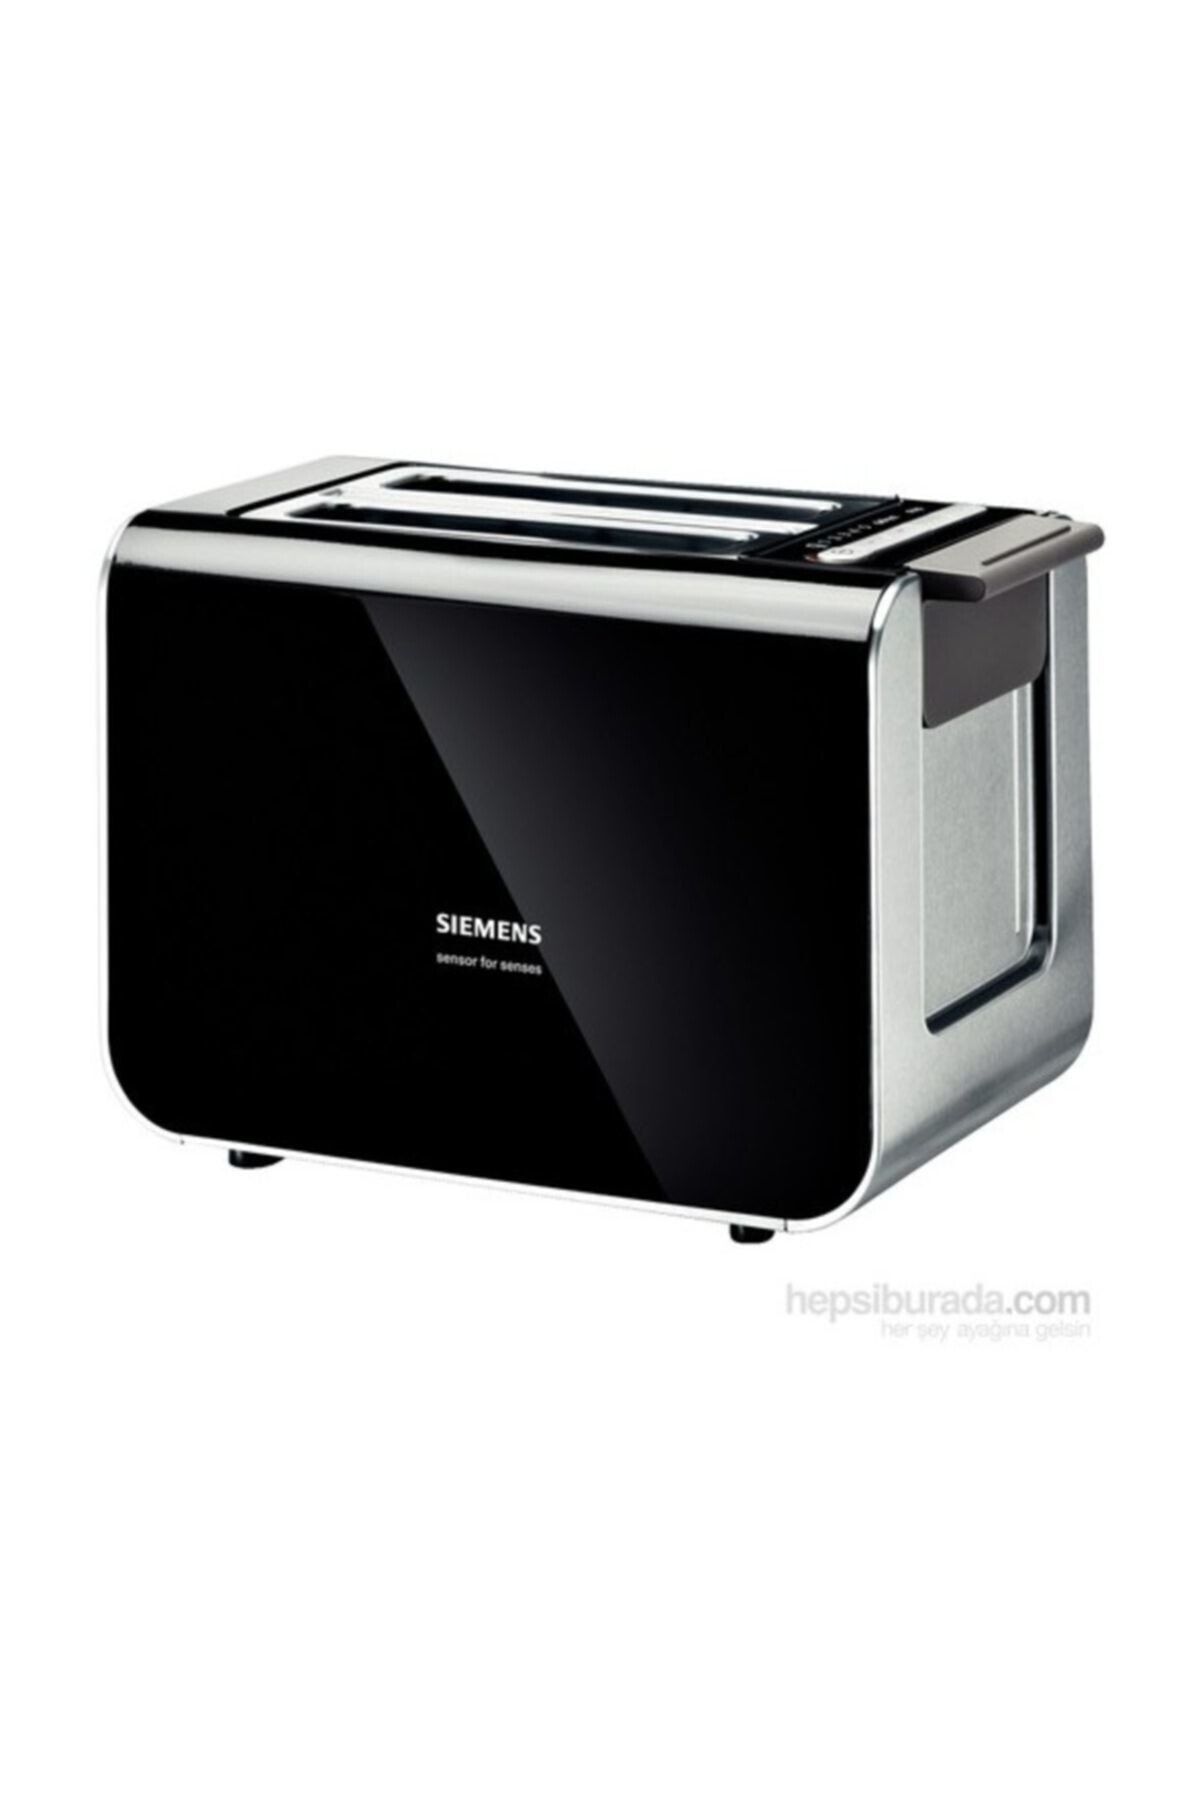 Siemens TT86103 860 W Çift Gözlü Ekmek Kızartma Makinesi